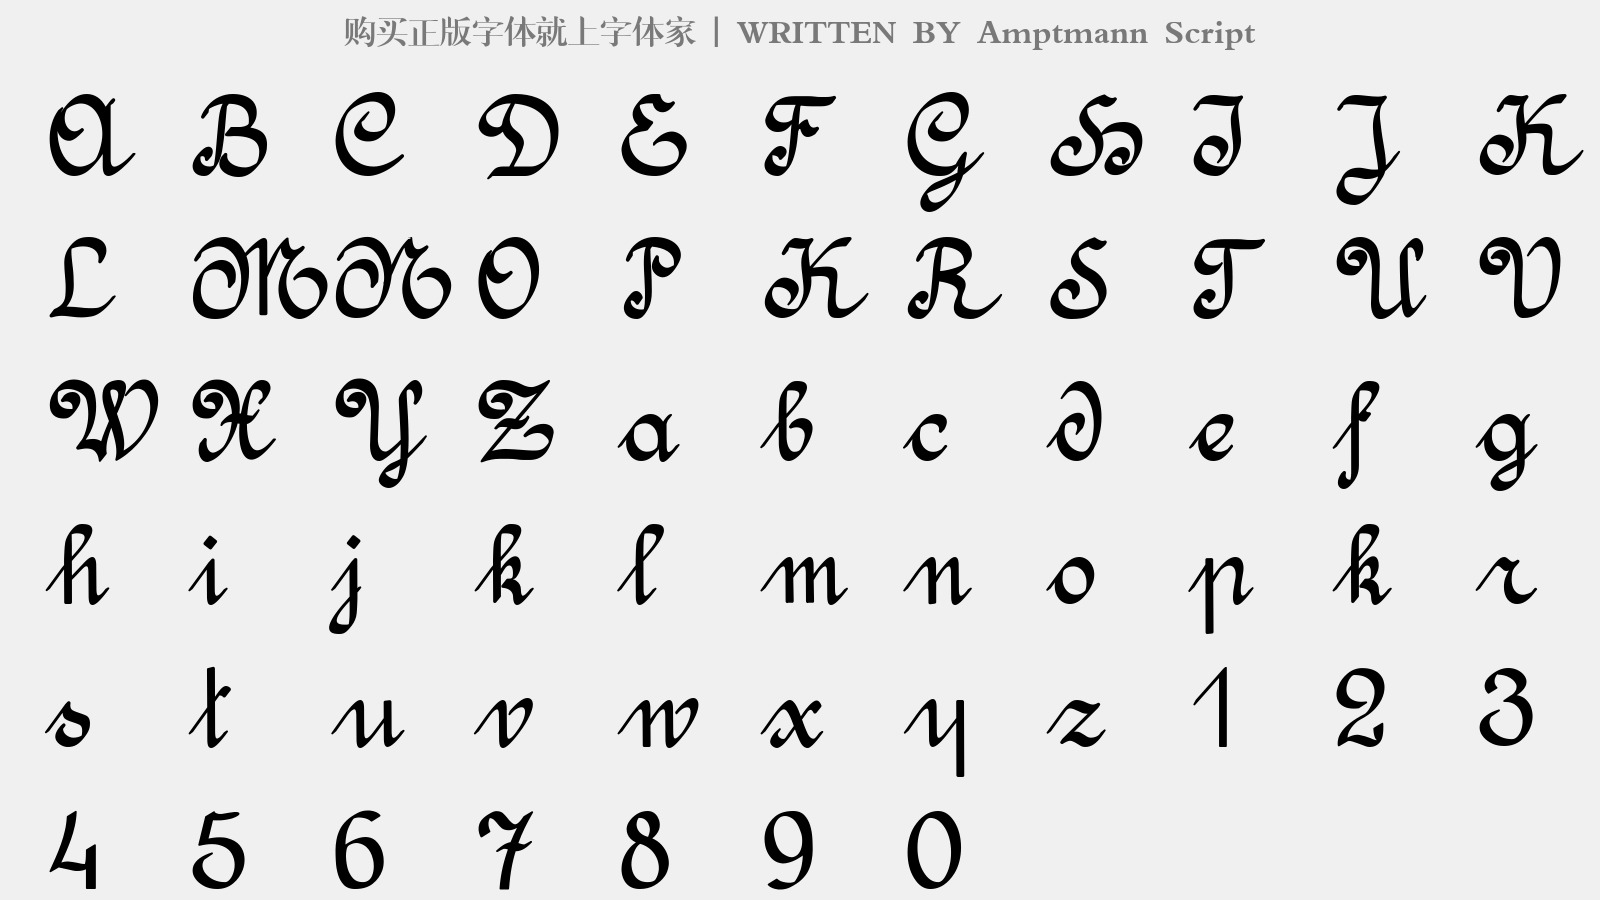 Amptmann Script - 大写字母/小写字母/数字